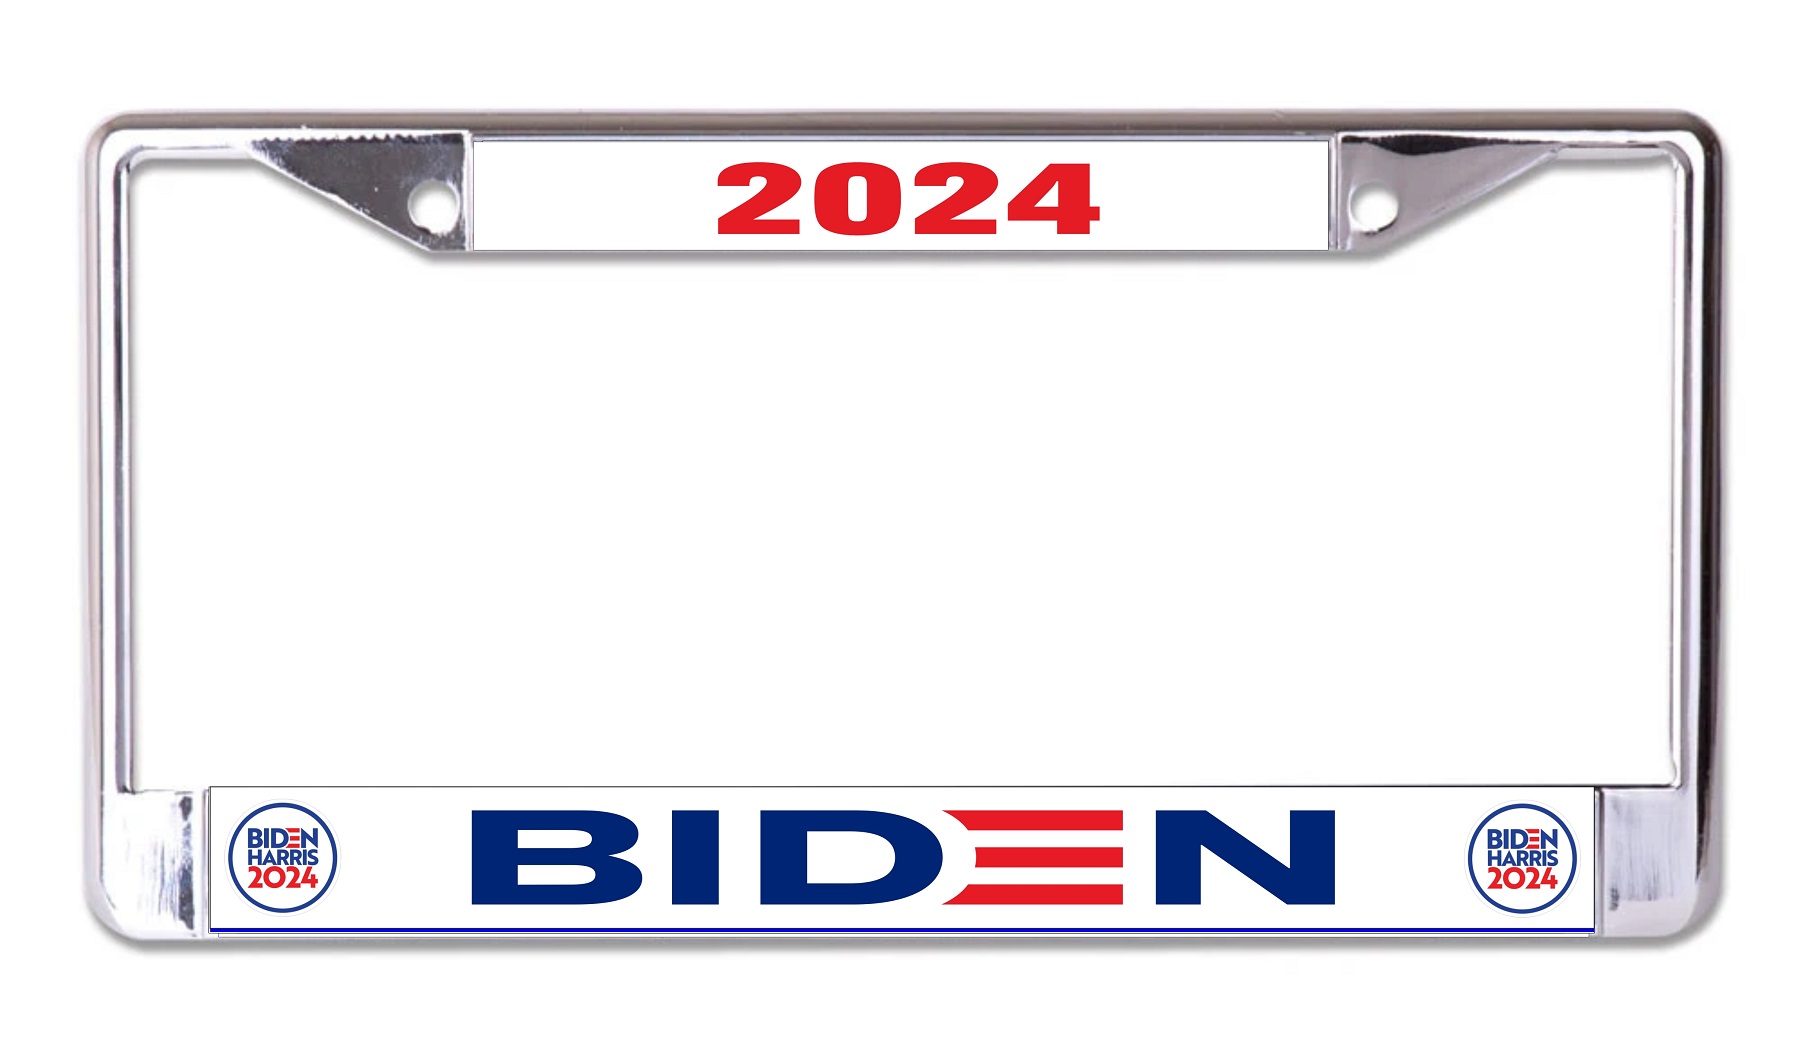 Biden Harris 2024 Chrome LICENSE PLATE Frame